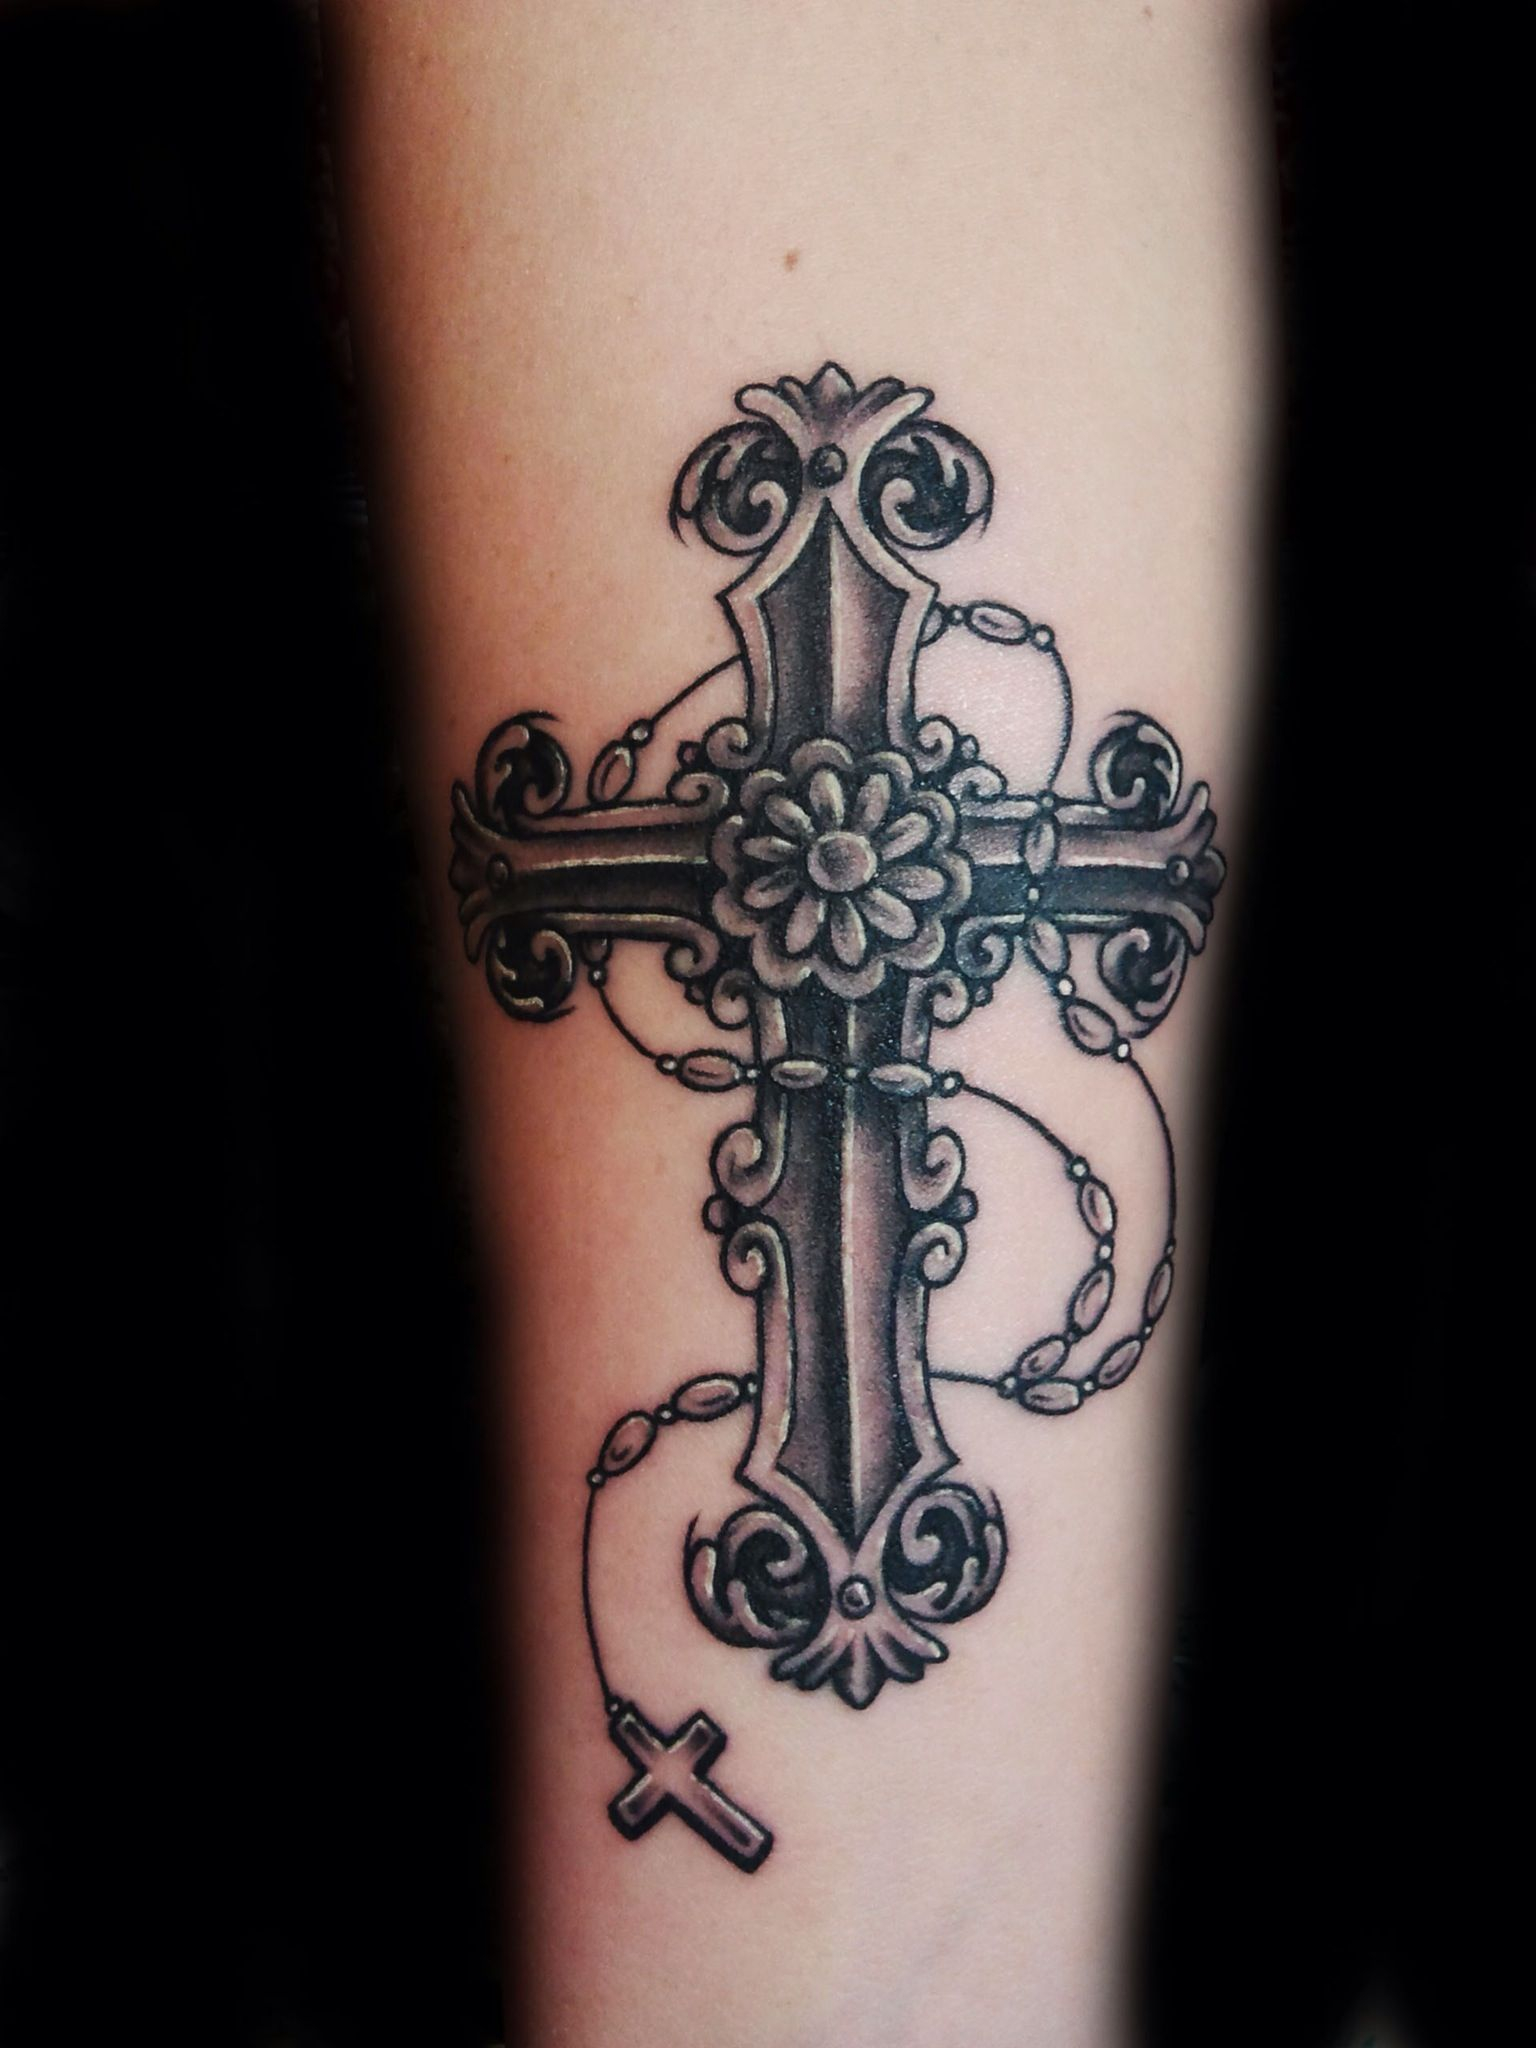 Tattoo Ideas Patterns Tattoo Gothic Crosses Tattoo Body Art Tattoo within sizing 1536 X 2048